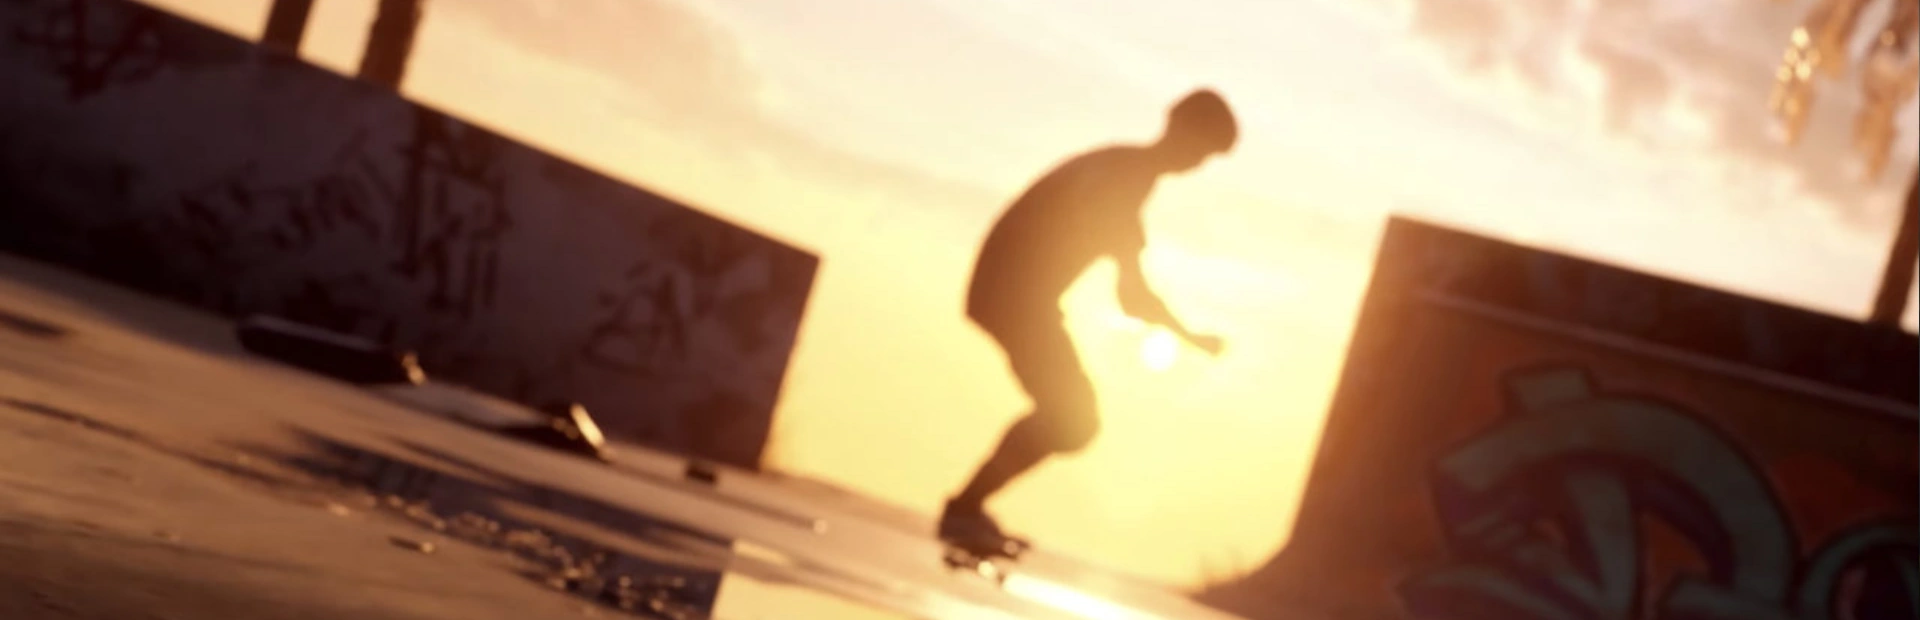 دانلود بازی Tony Hawk’s Pro Skater 1 and 2 برای PC | گیمباتو